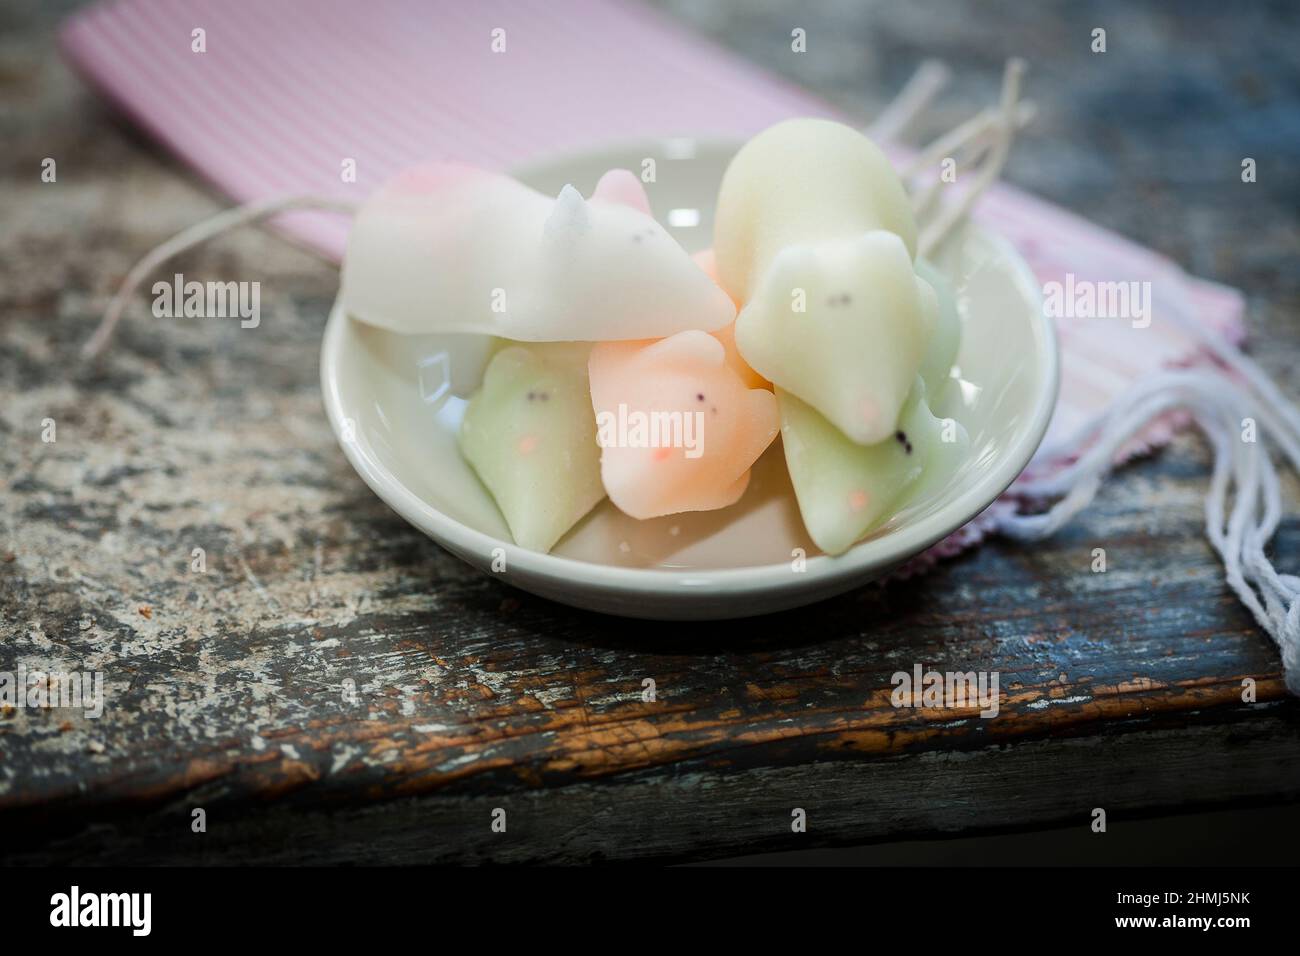 Sugar mice confection for sale in a delicatessen Stock Photo